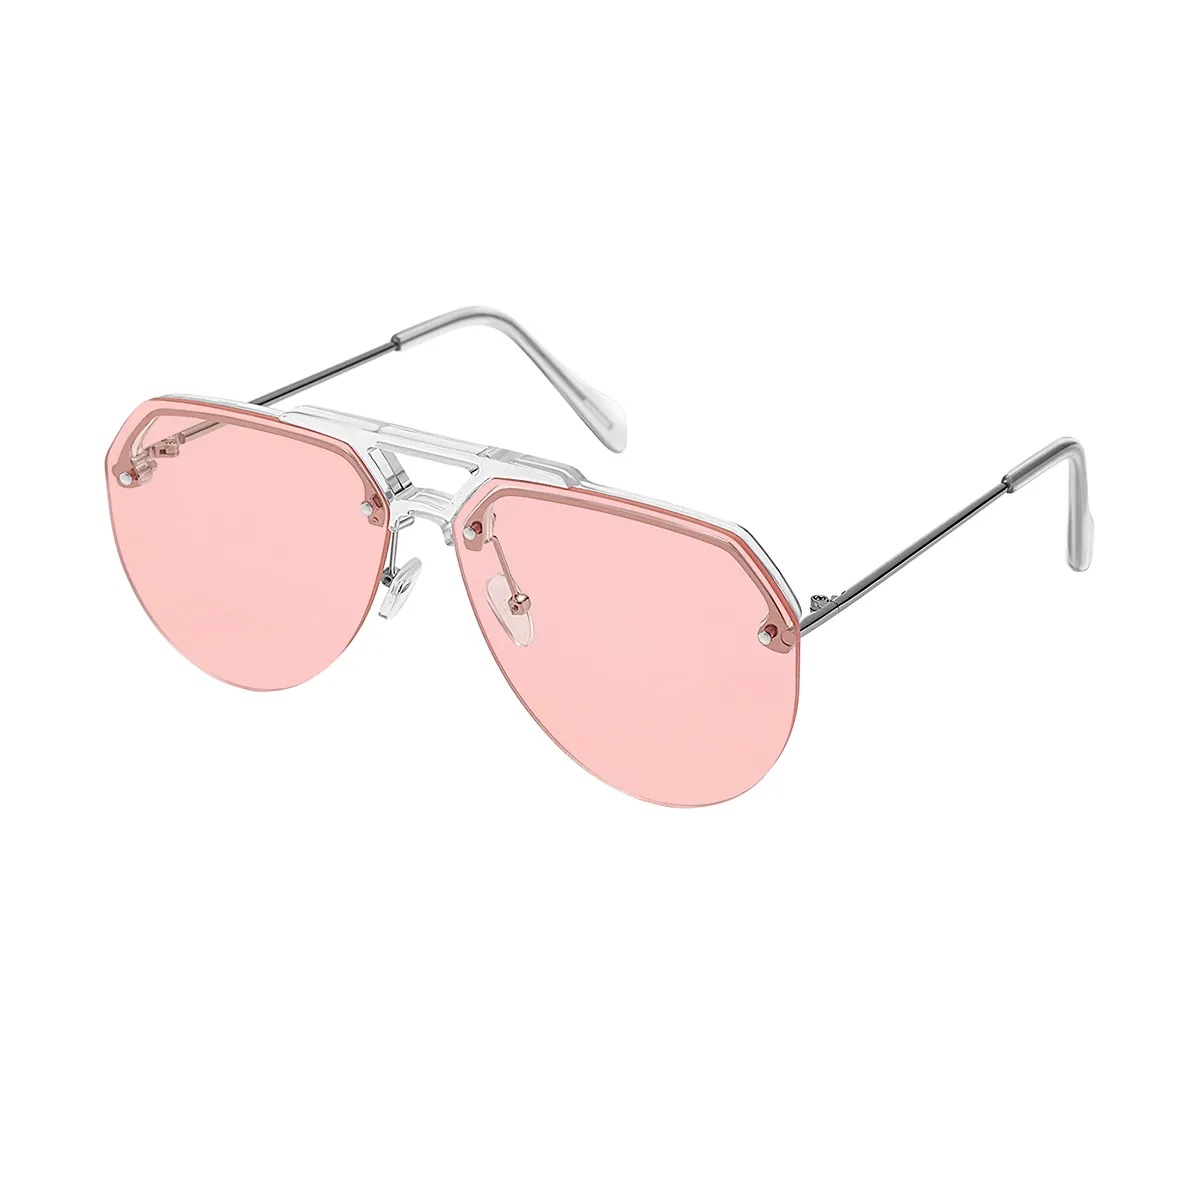 Nancy - Aviator Silver Sunglasses for Men & Women